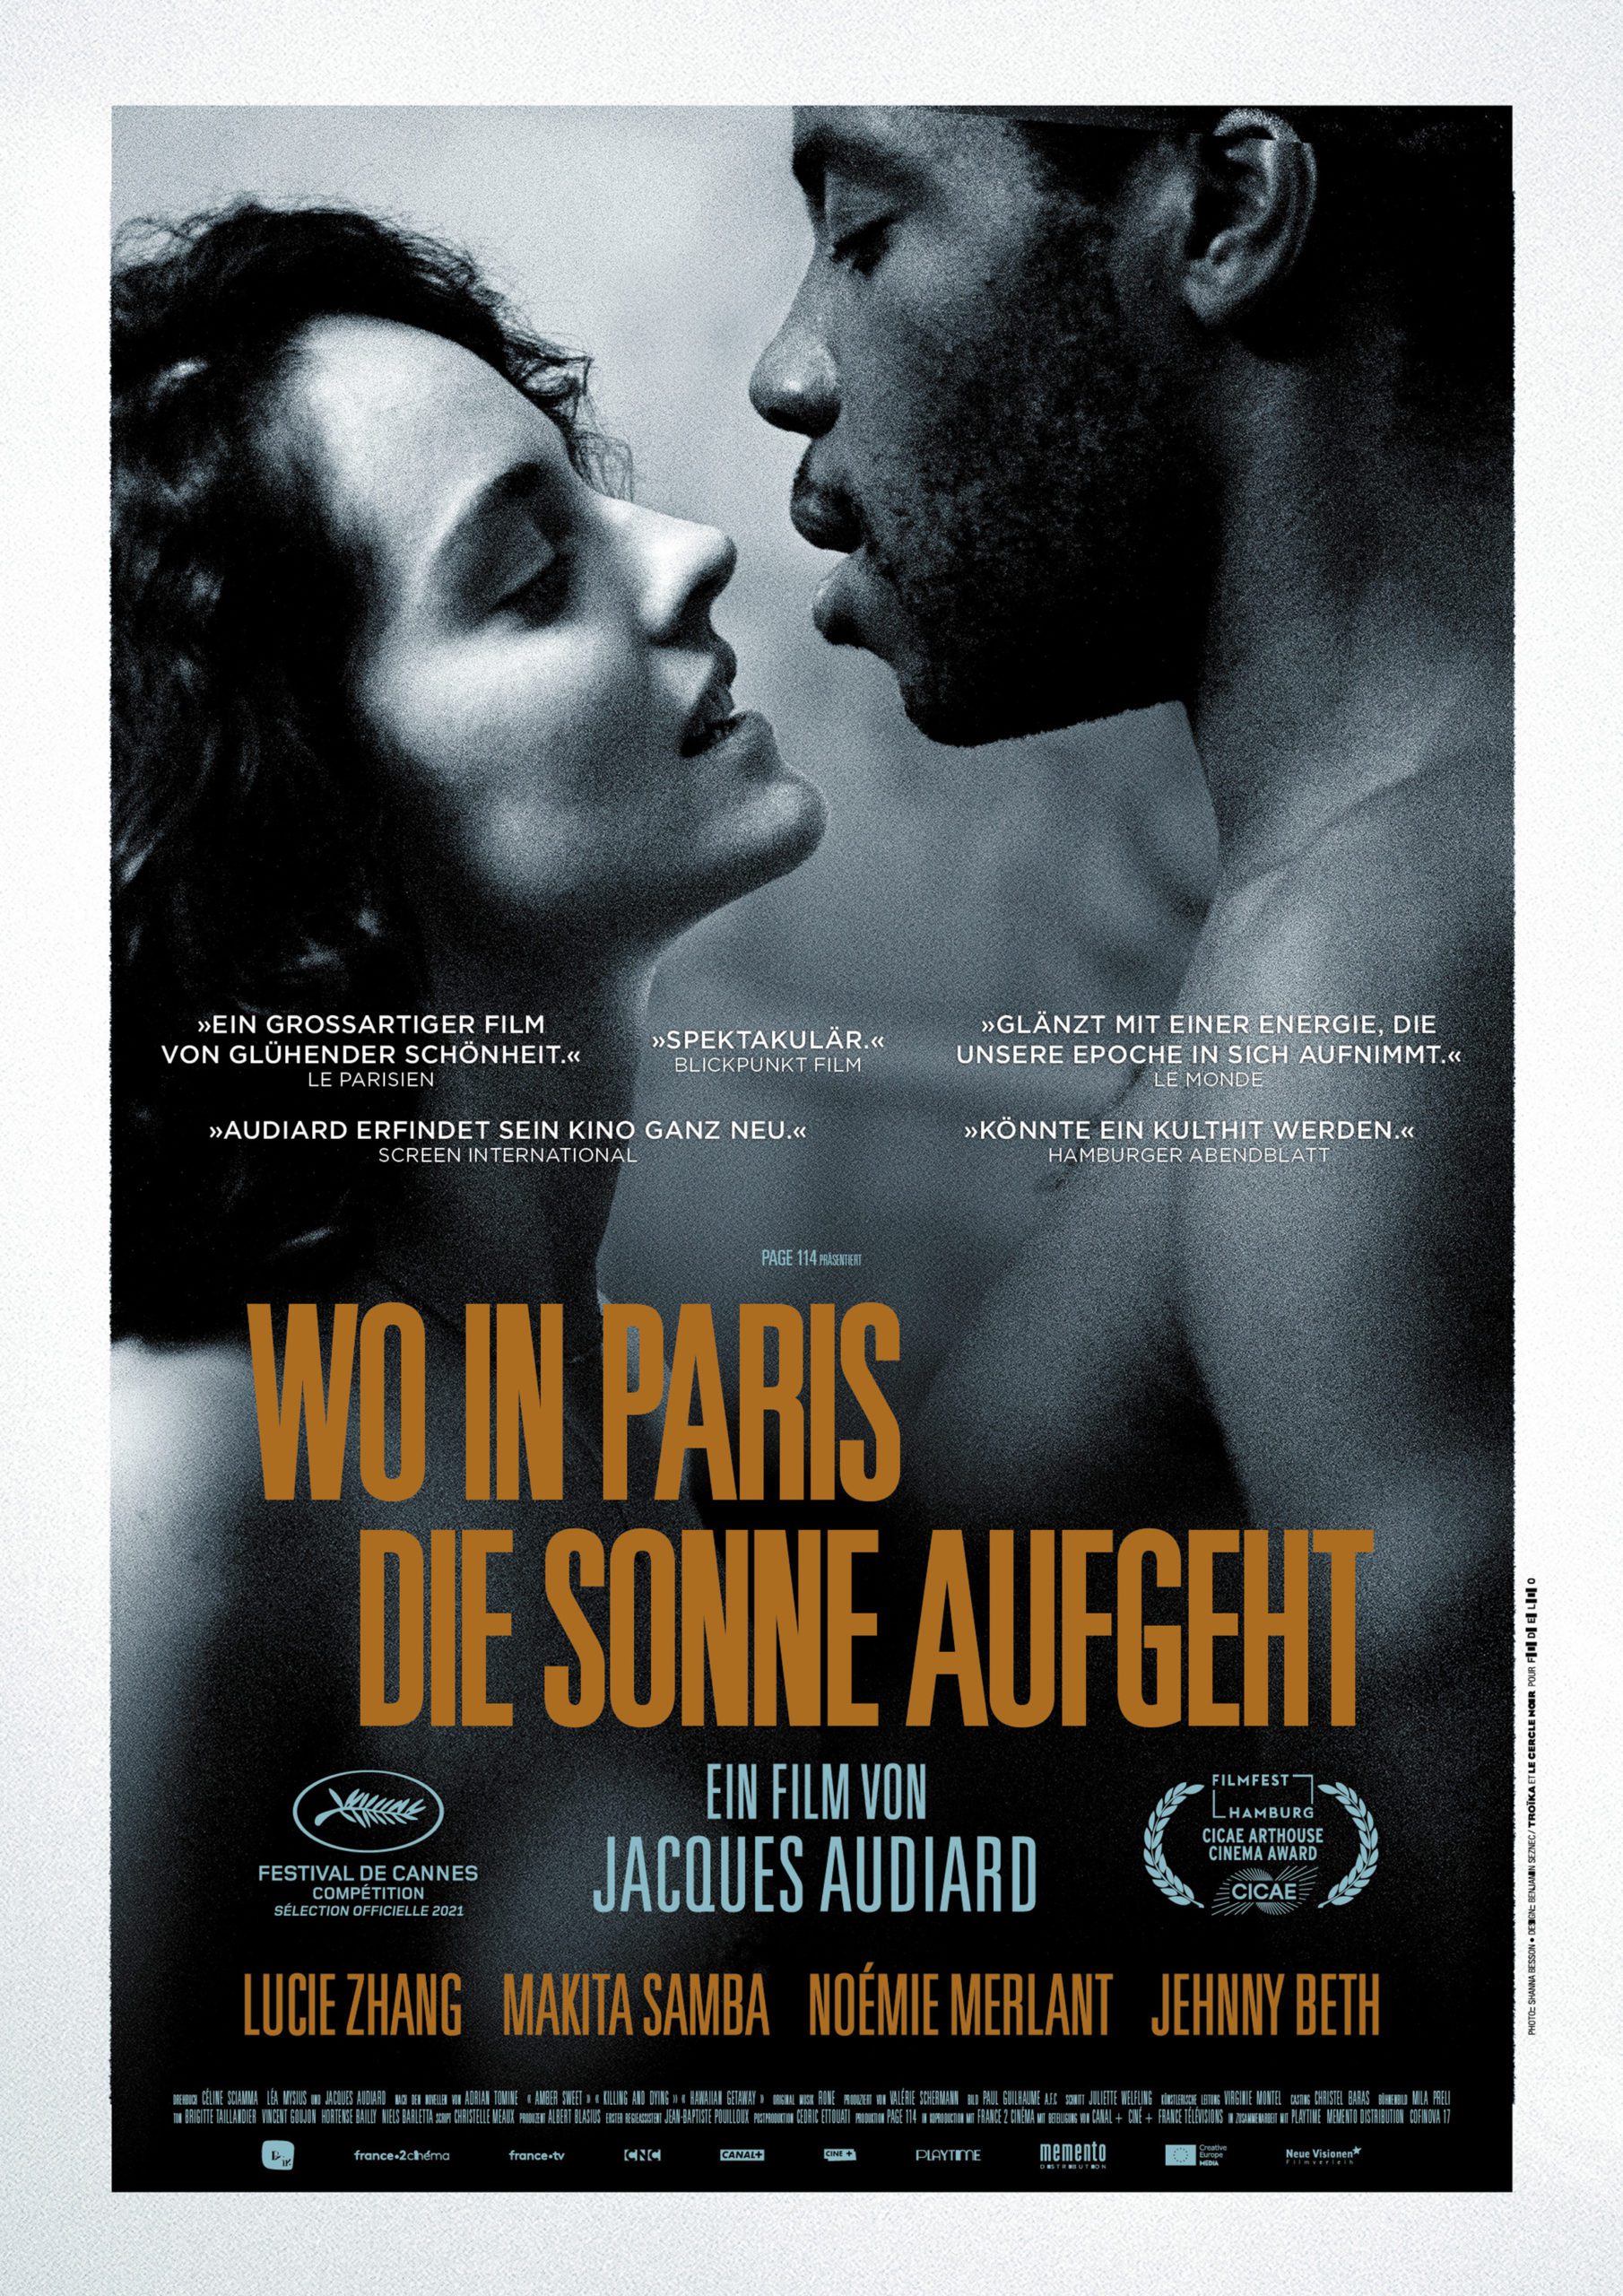 „Wo in Paris die Sonne aufgeht“ ist ein pointiert geschriebener Schnappschuss moderner Liebe und Beziehungen